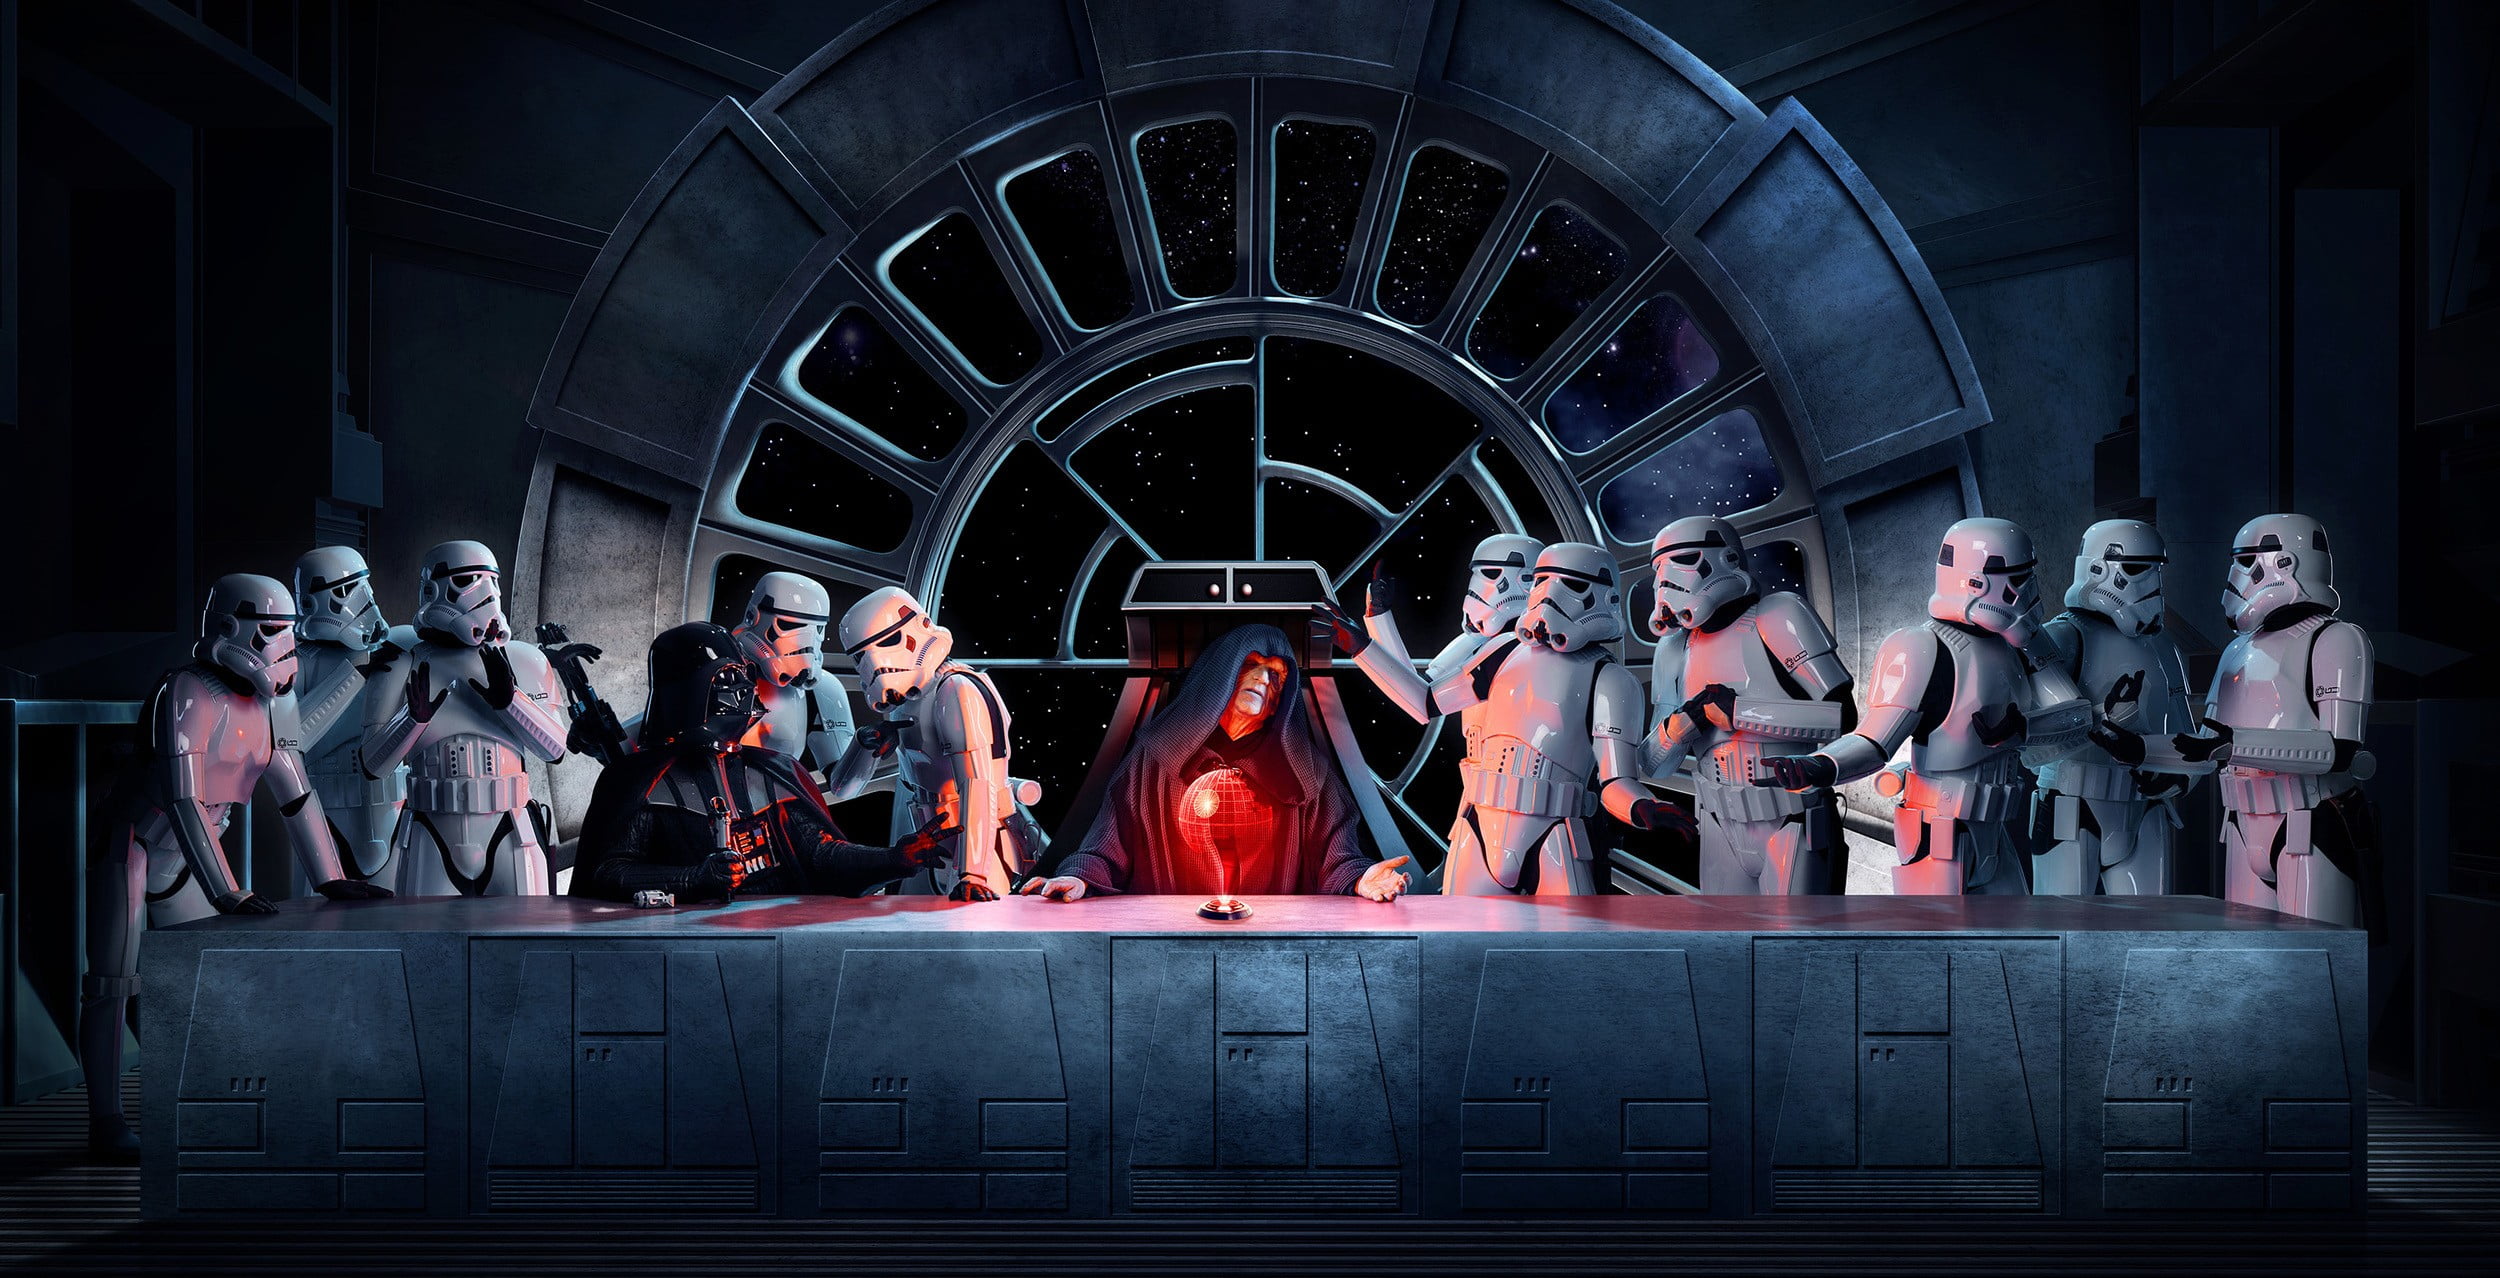 Star Wars wallpaper, Darth Vader, Emperor Palpatine, stormtrooper